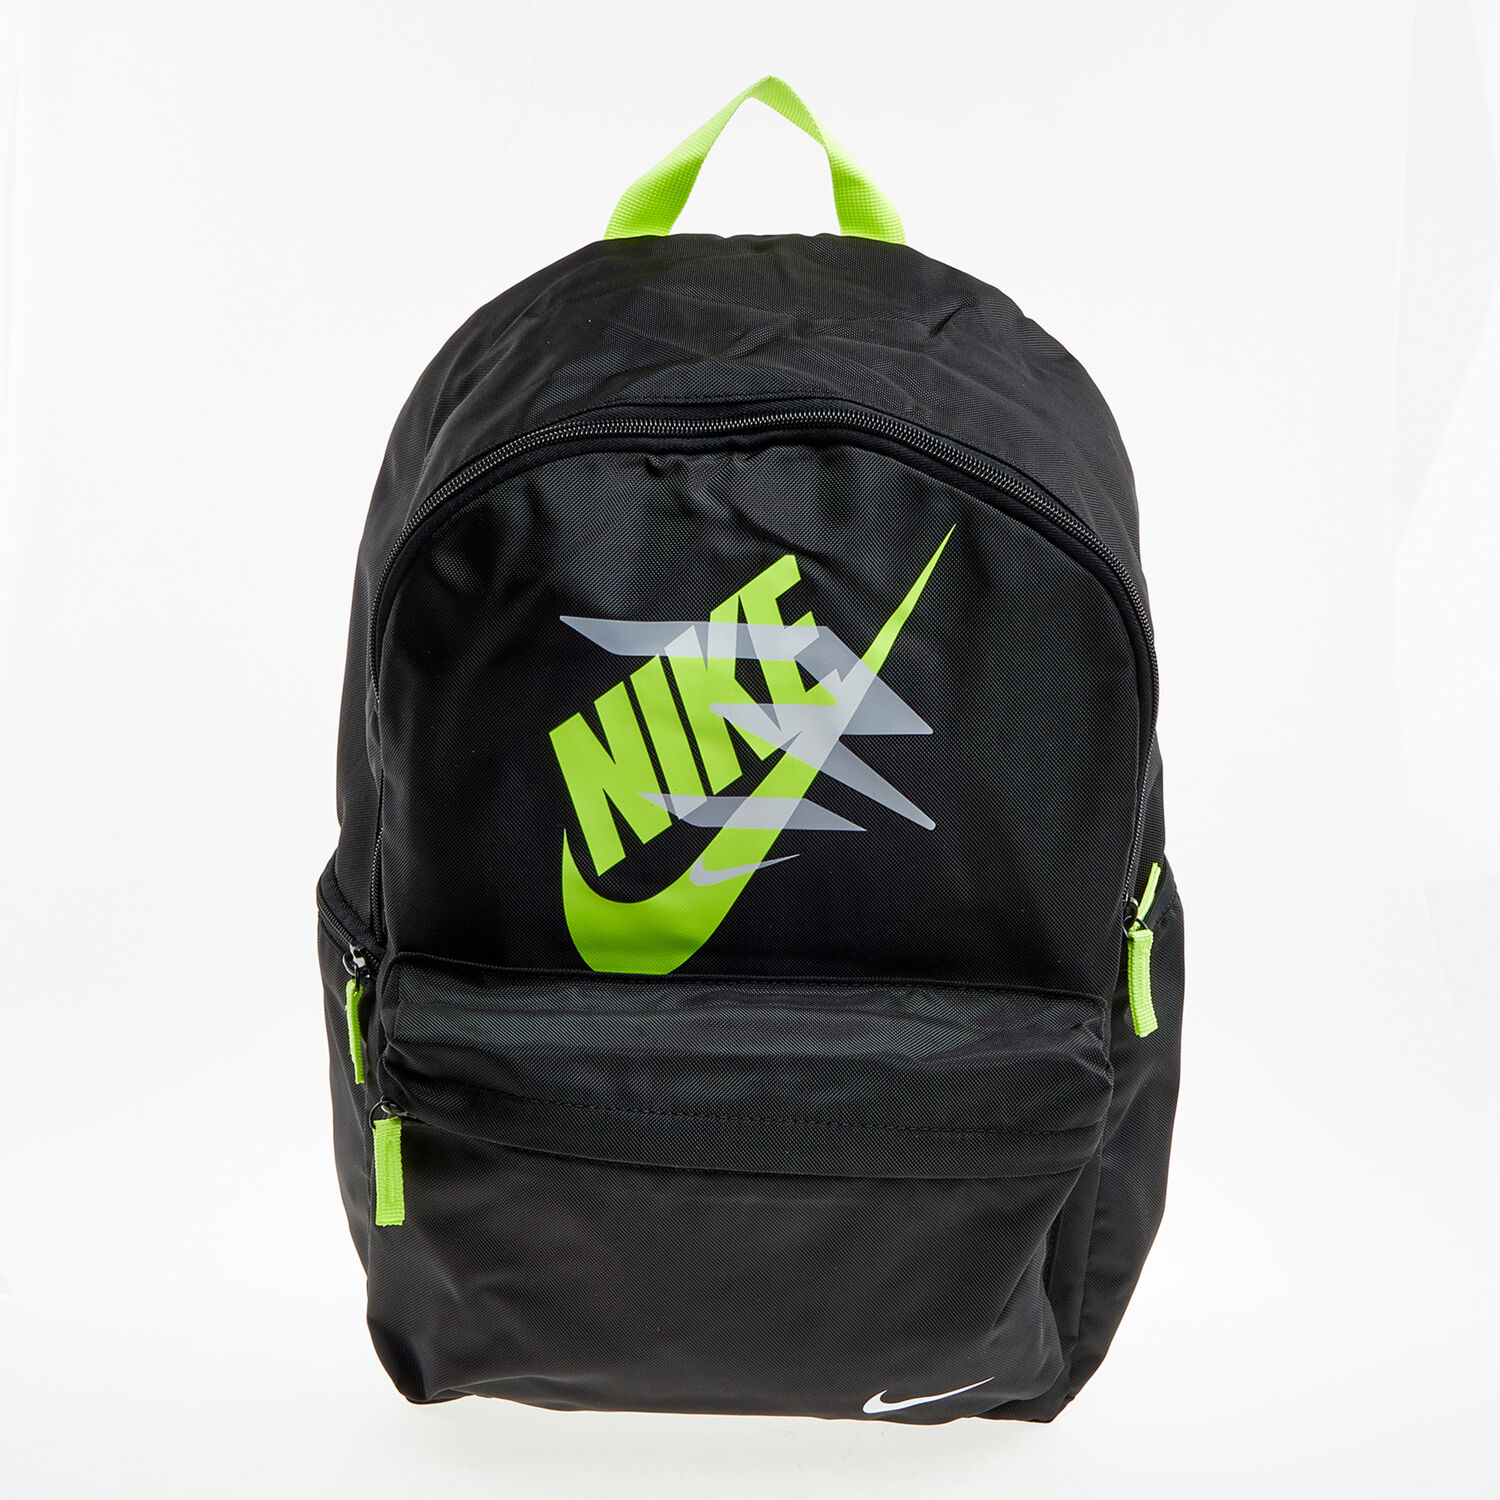 Черный рюкзак с неоново-зеленым логотипом Nike